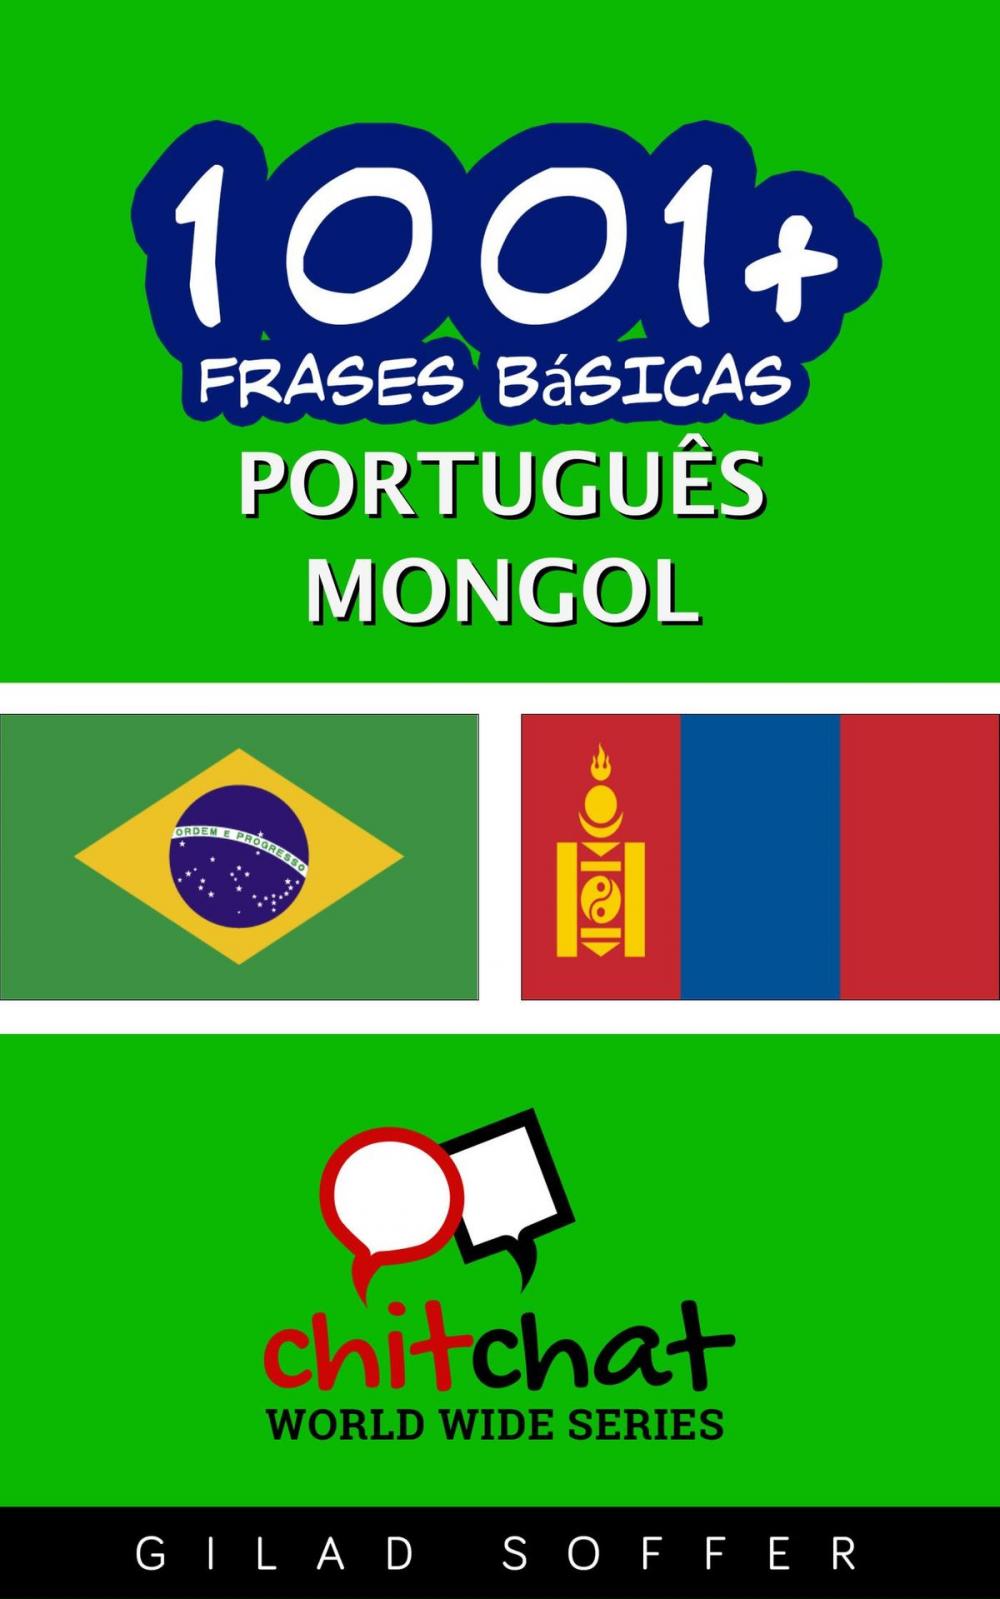 Big bigCover of 1001+ Frases Básicas Português - mongol